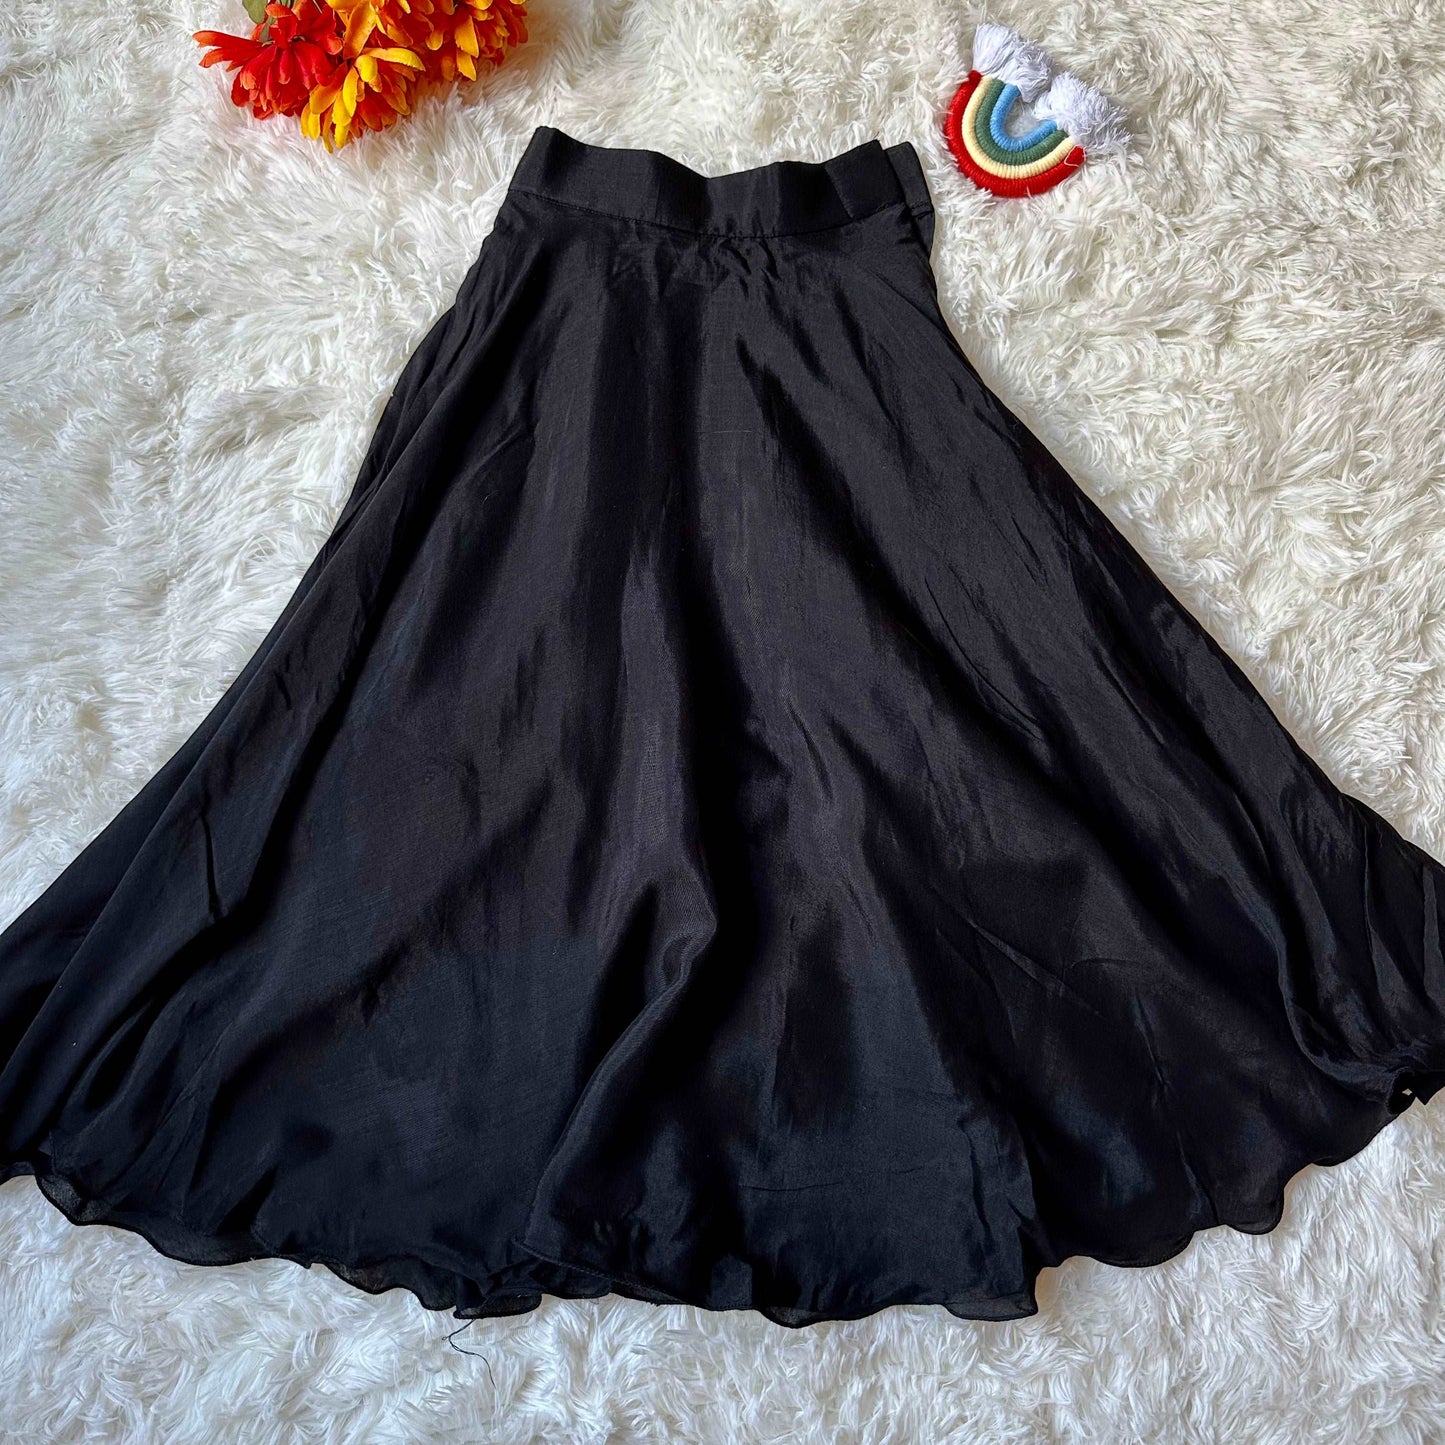 Black Rayon Ruffle Crop Top | Circular Skirt | 4-5 Yrs - Kalas Couture